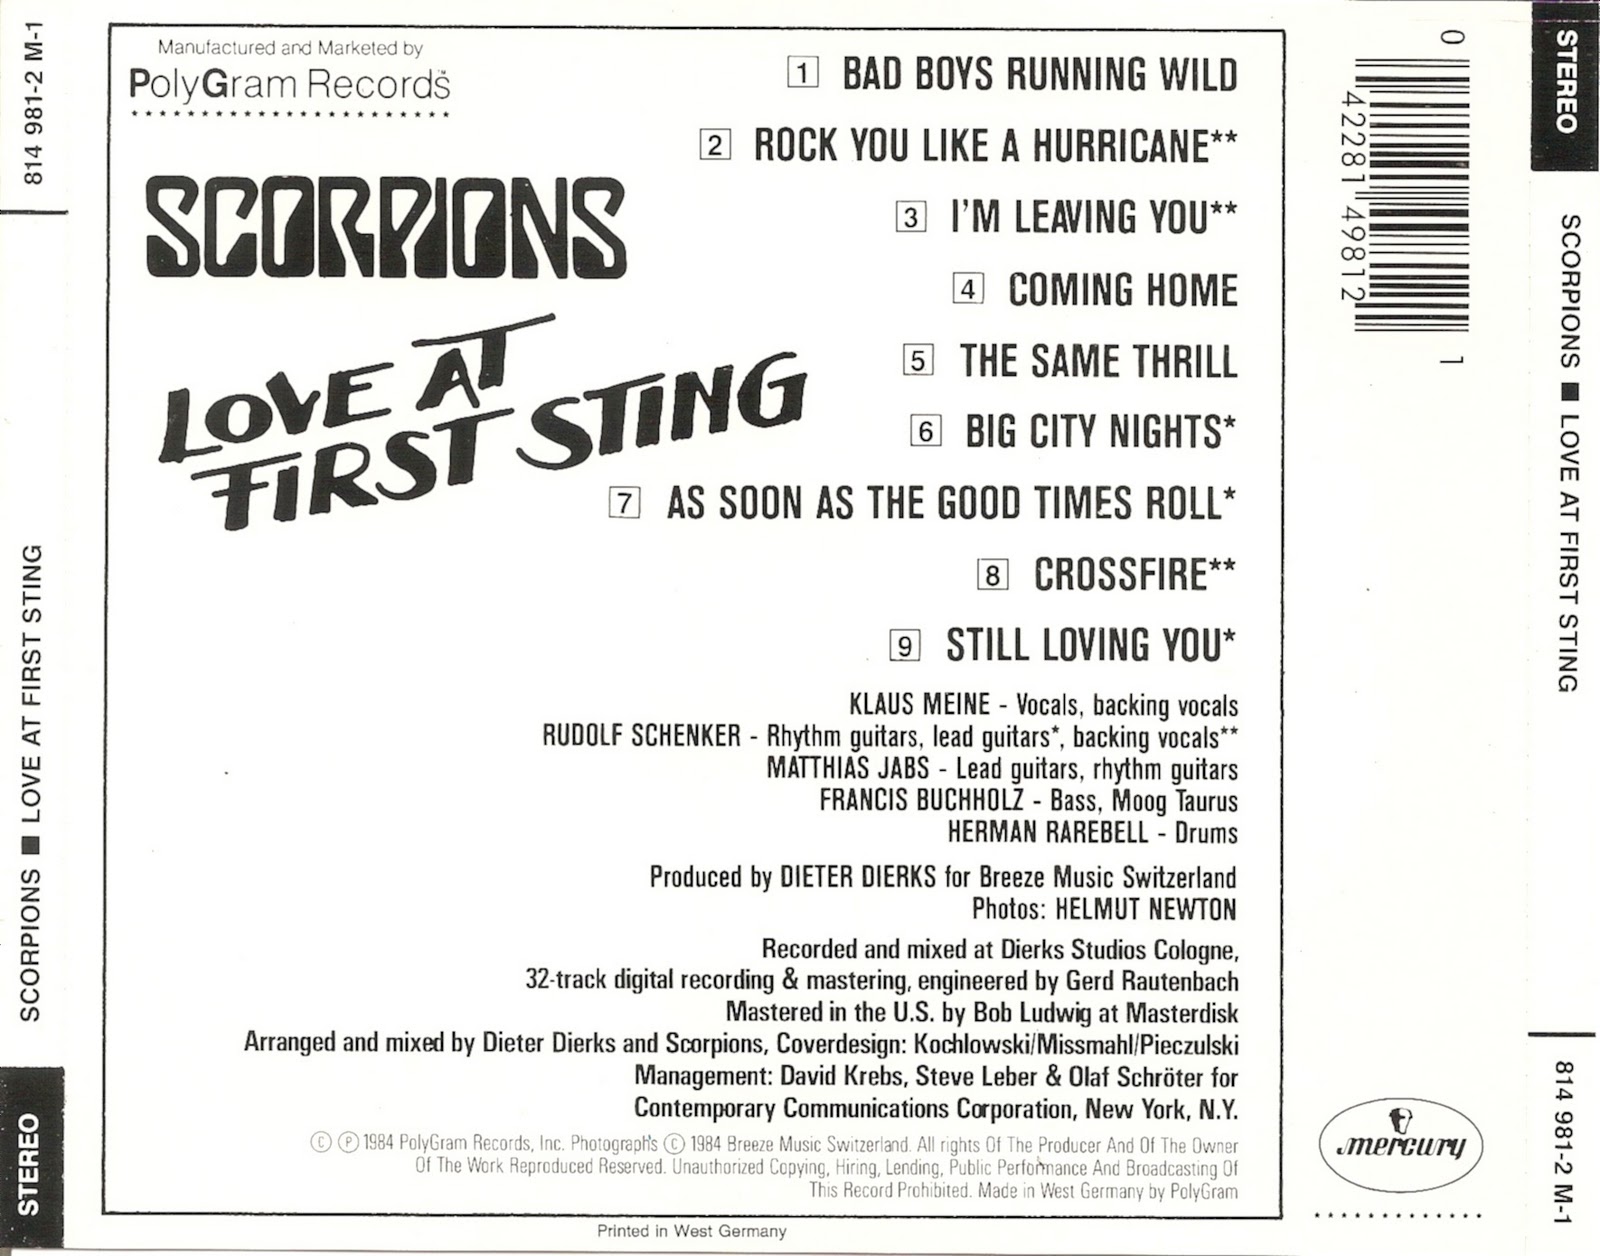 First sting. Scorpions 1984. 1984 - Love at first Sting. Scorpions Love at first Sting обложка. Группа скорпионс 1984.